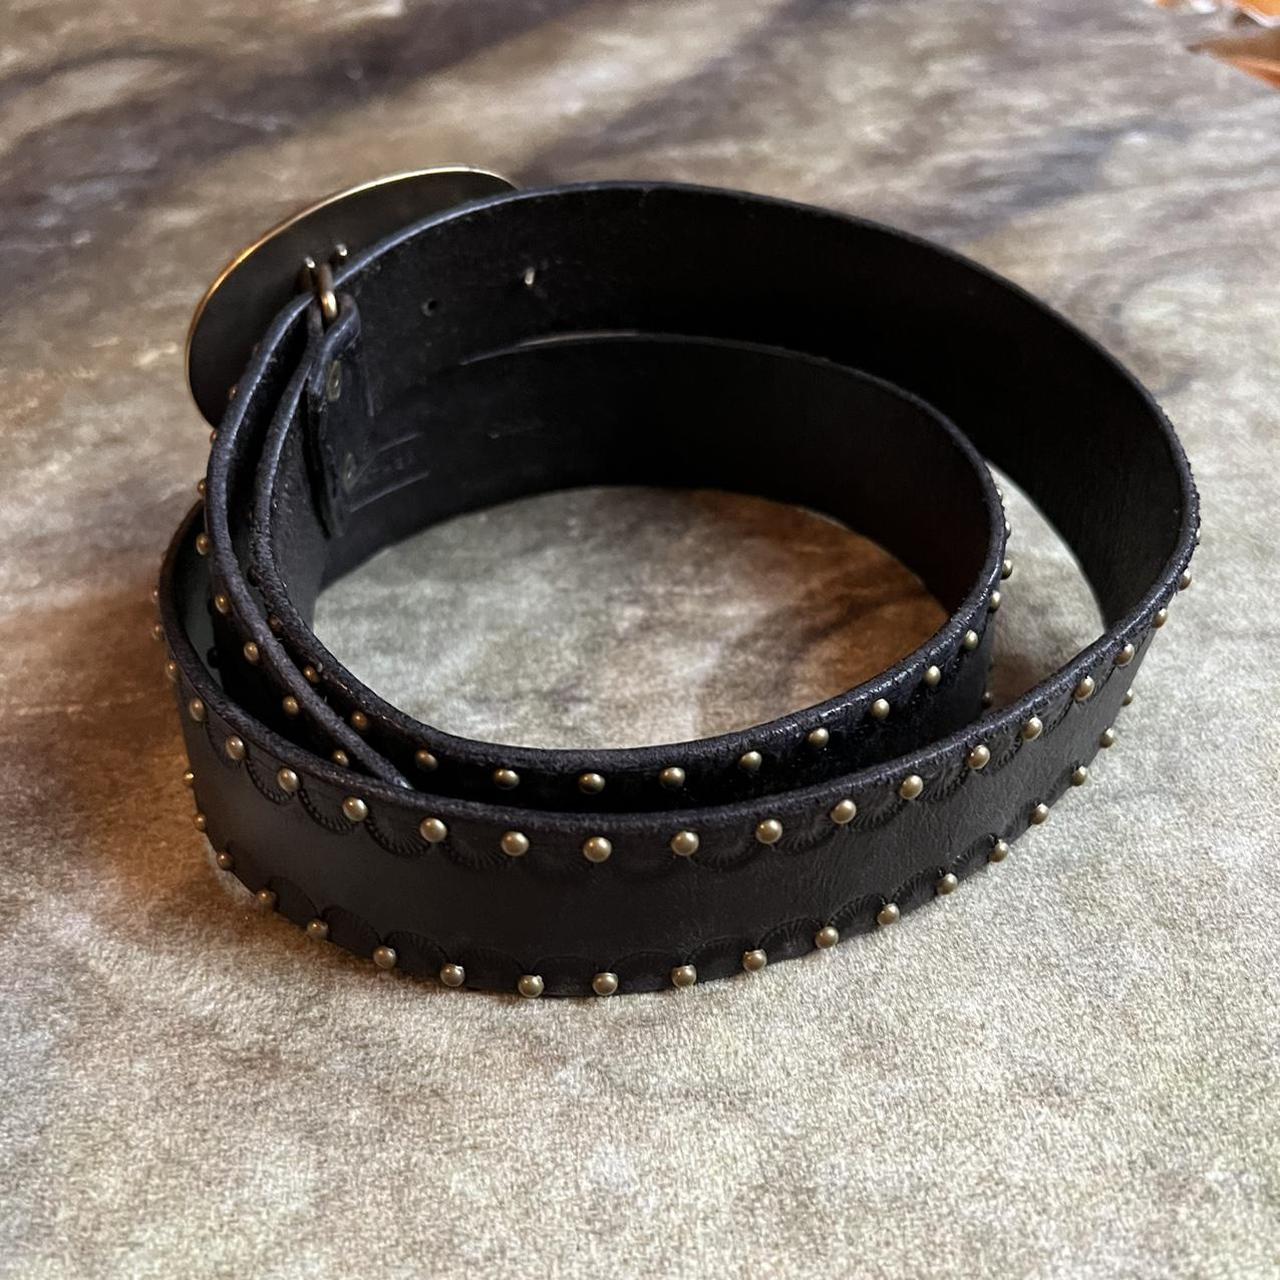 Y2k ethereal grunge black leather belt with... - Depop